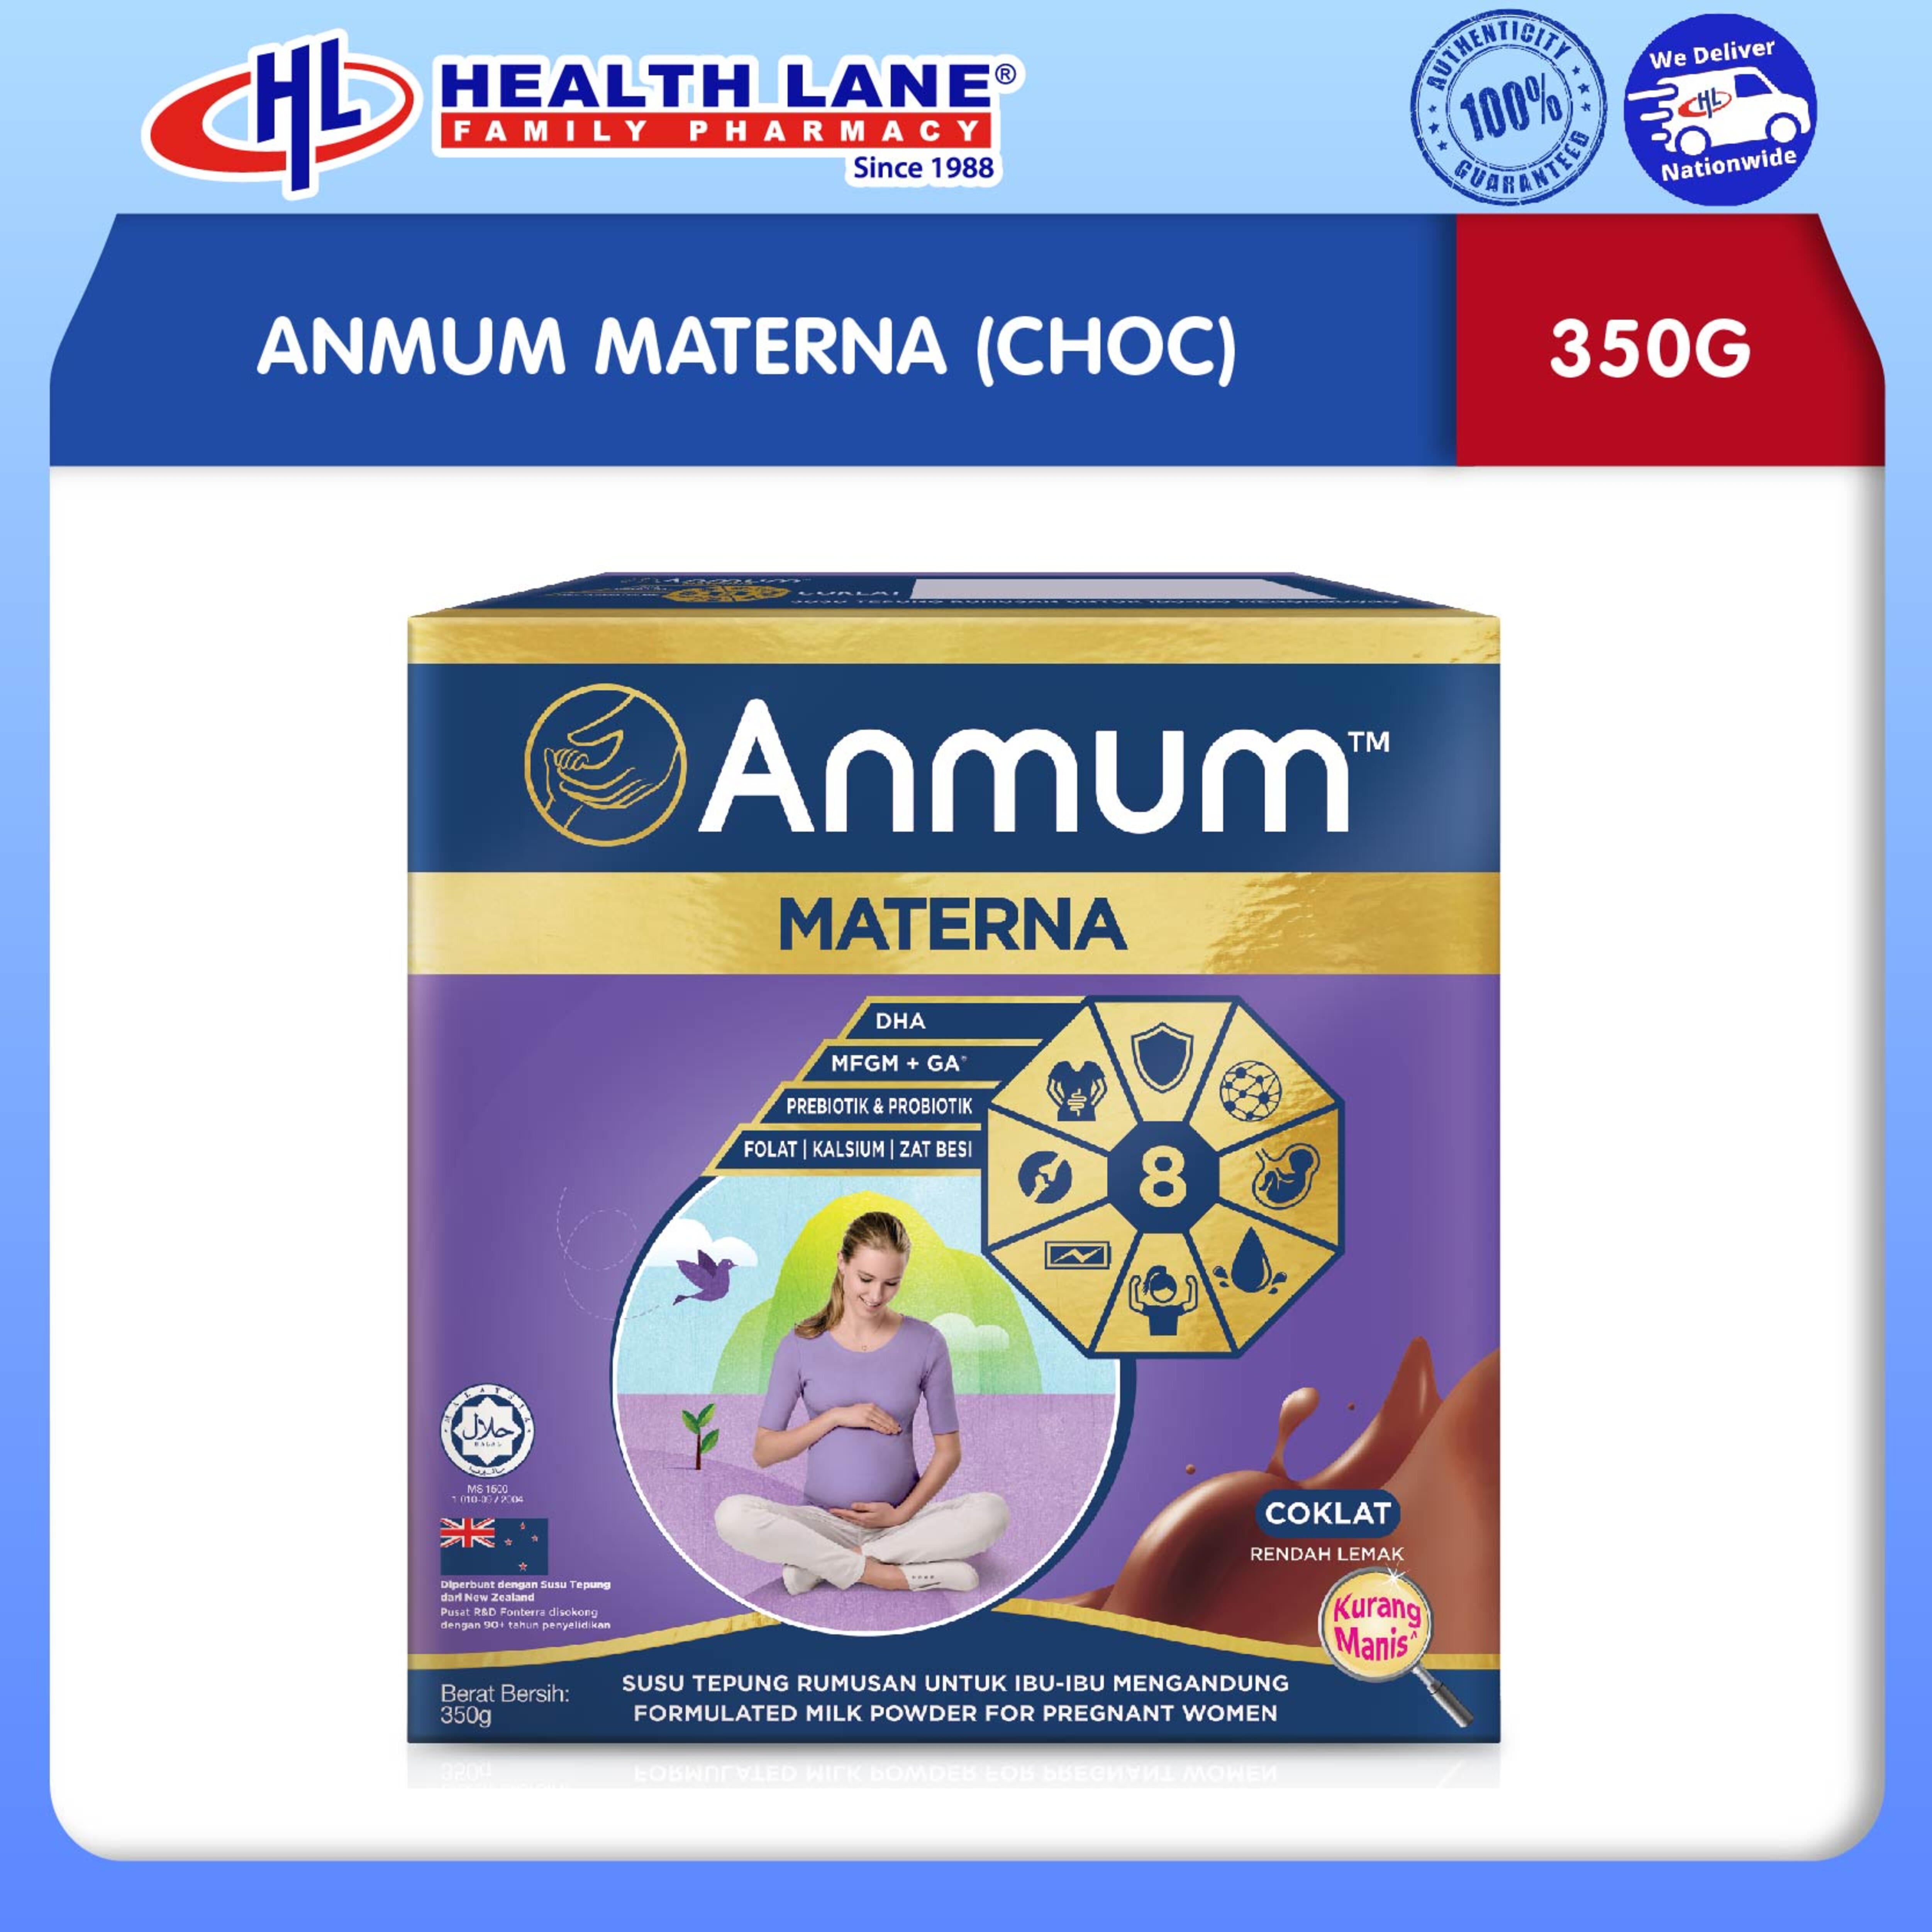 ANMUM MATERNA (CHOC) (350G)